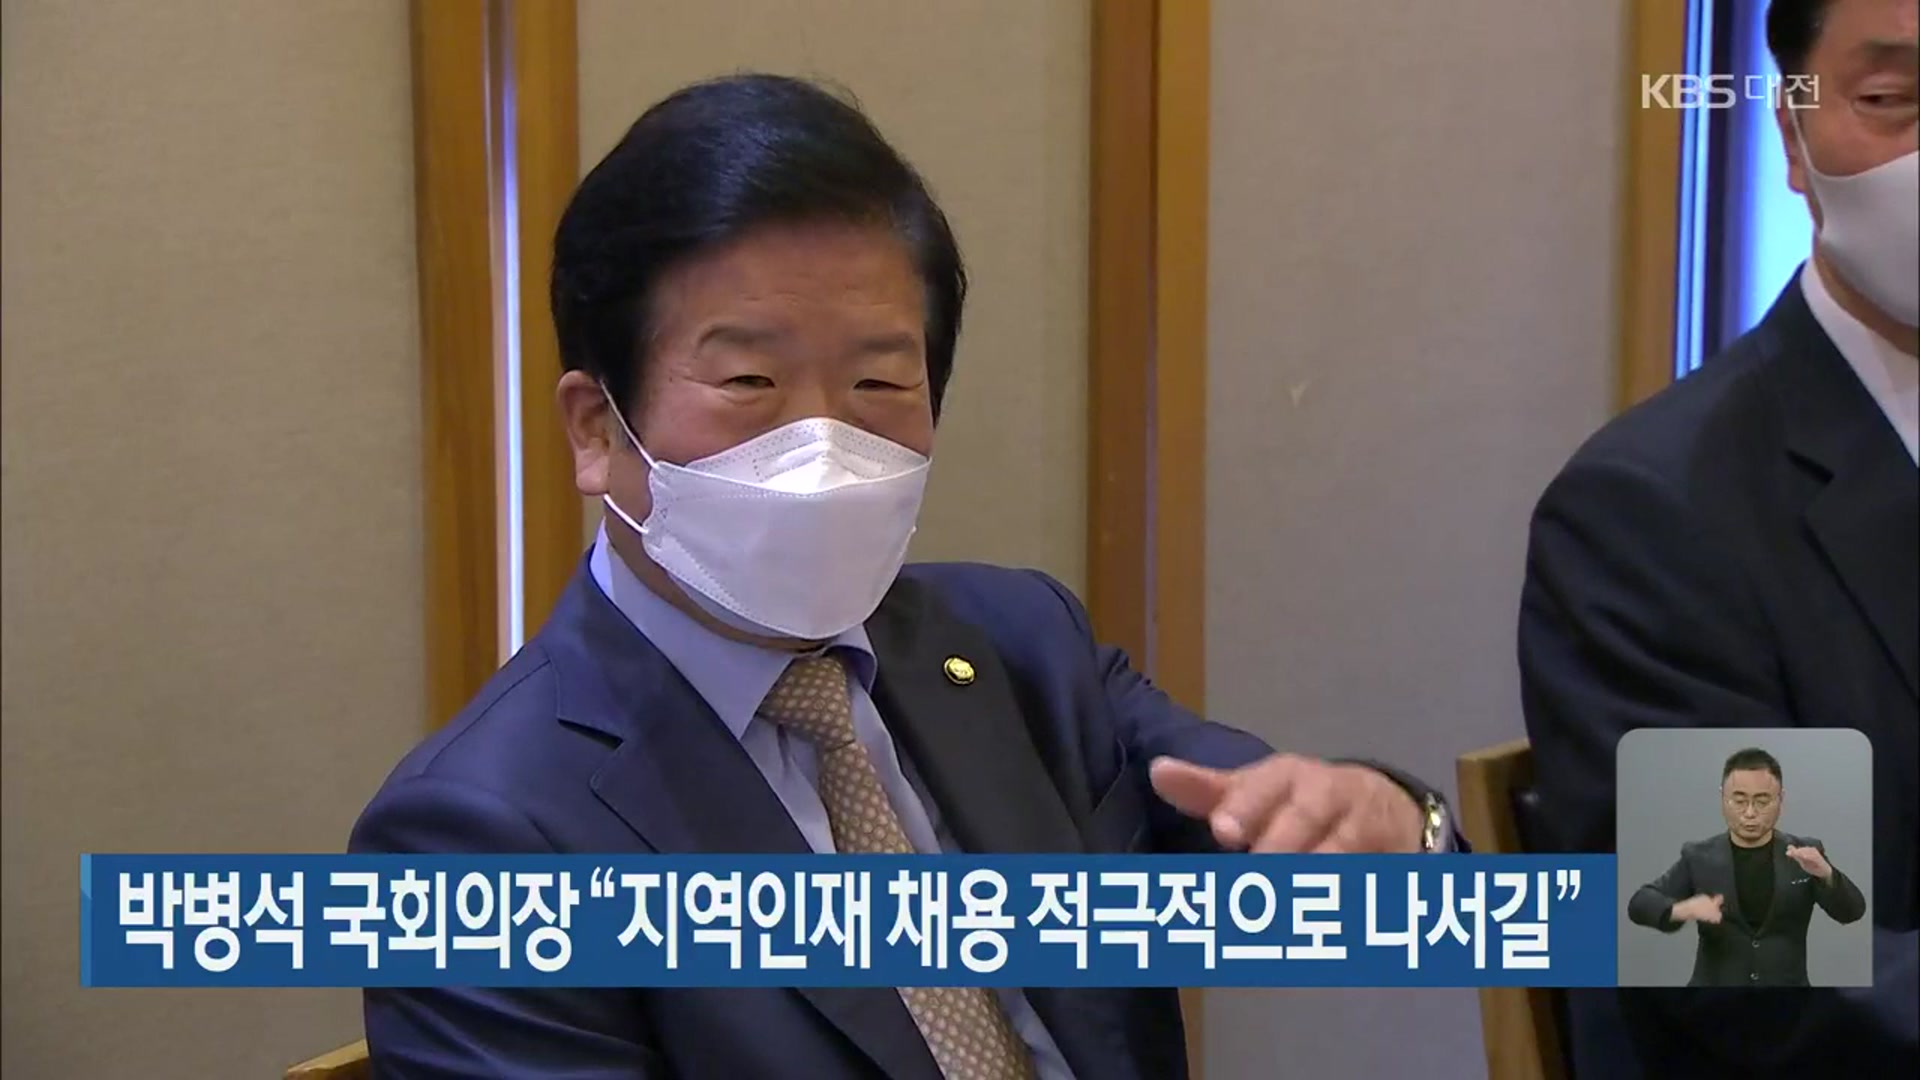 박병석 국회의장 “지역인재 채용 적극적으로 나서길”